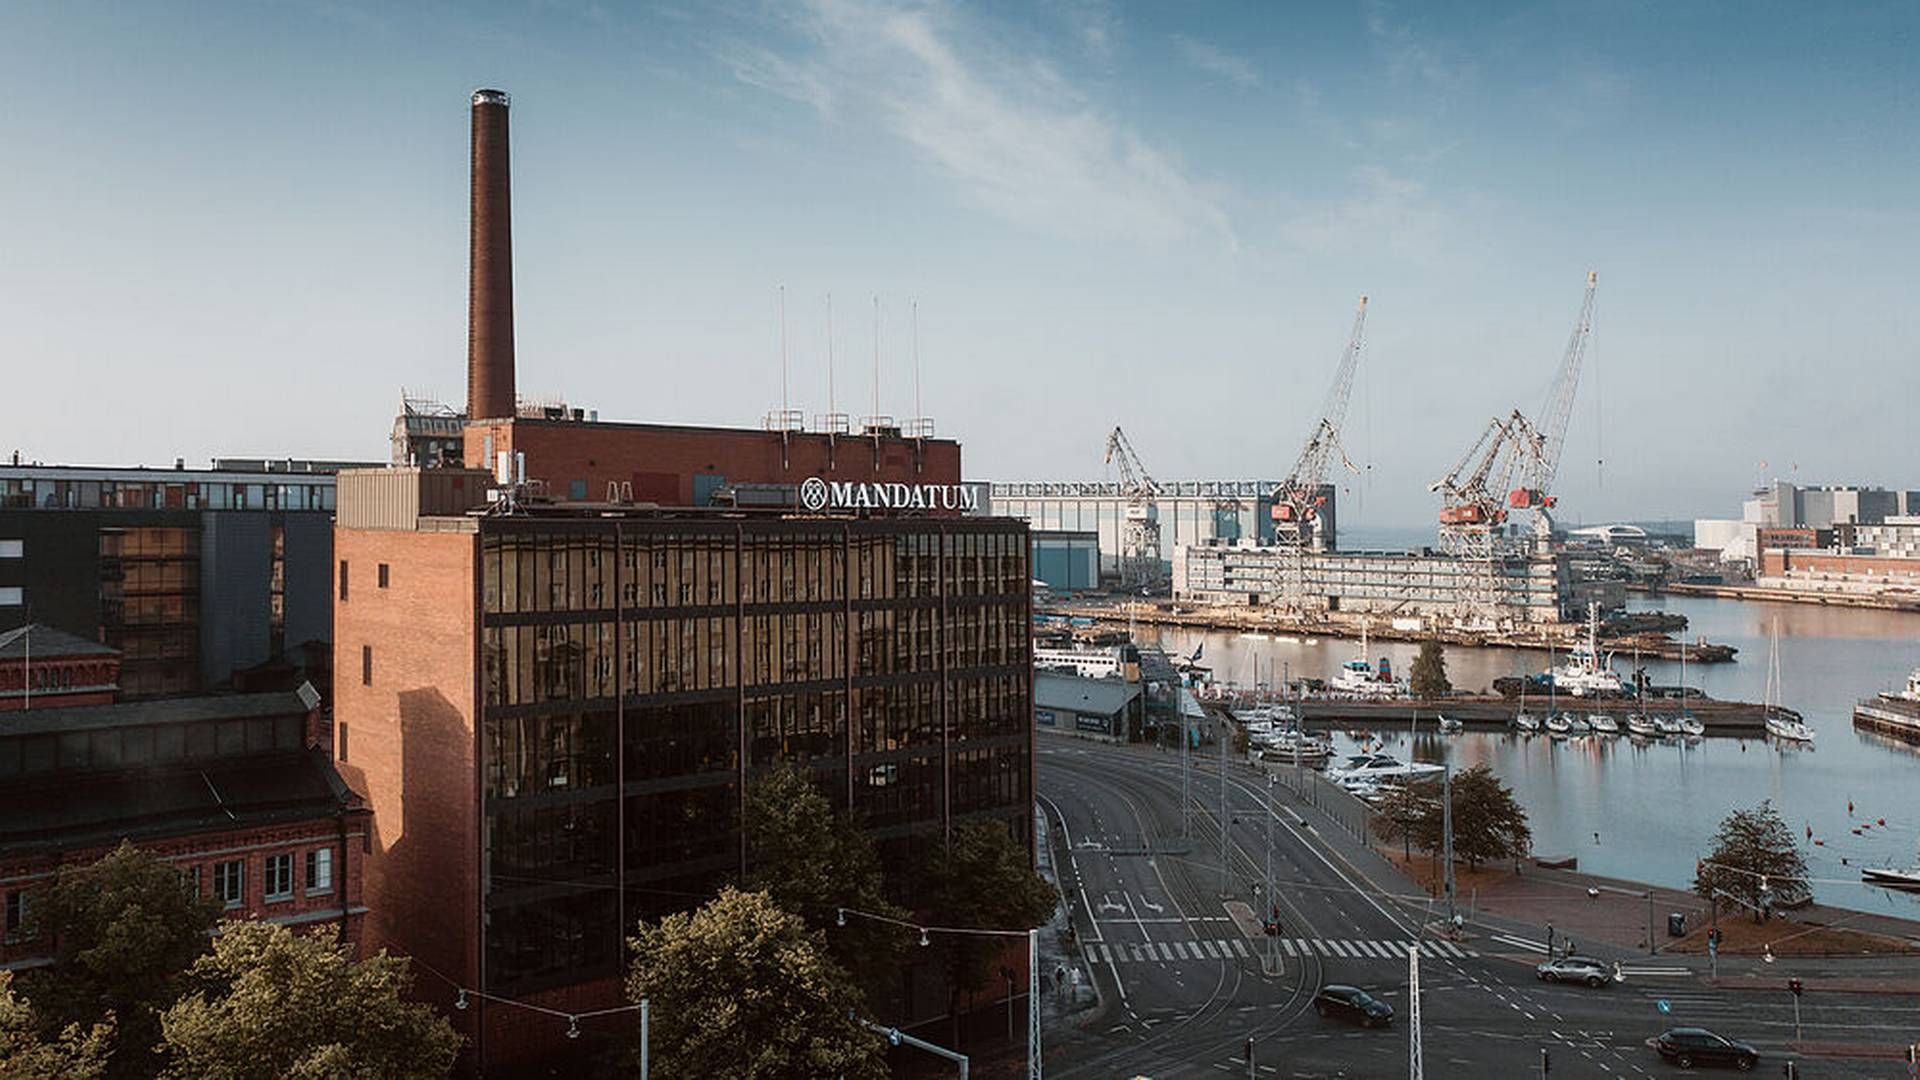 Mandatum headquarters in Helsinki, Finland. | Photo: PR / Mandatum